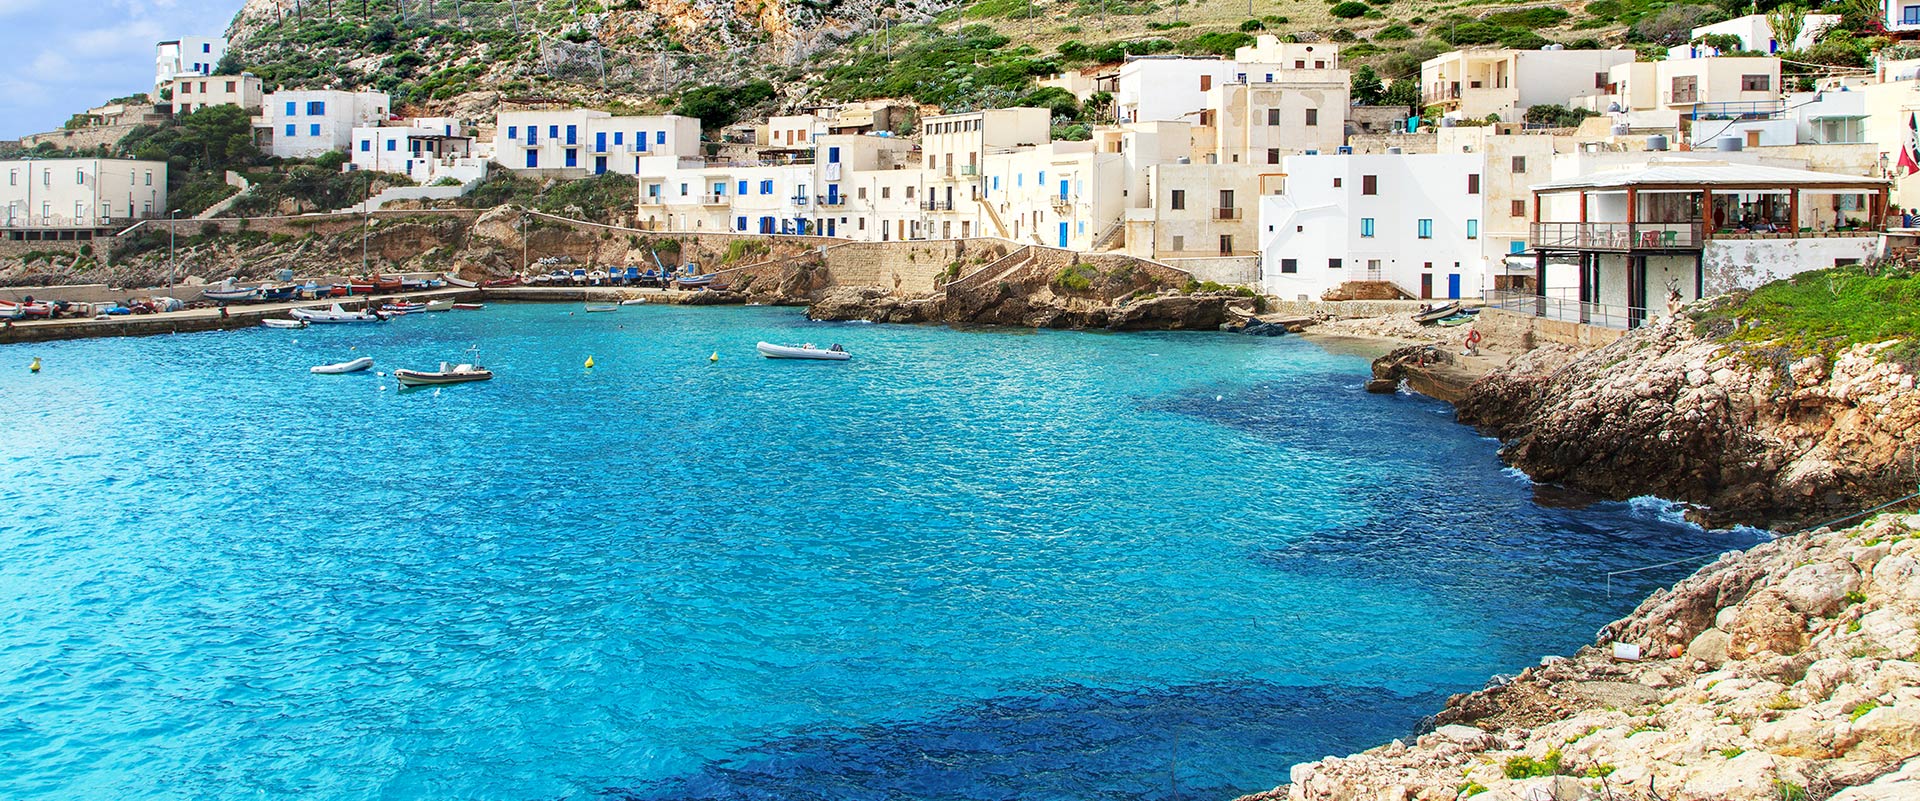 Isole Egadi, Sicilia: Crociere in barca a vela